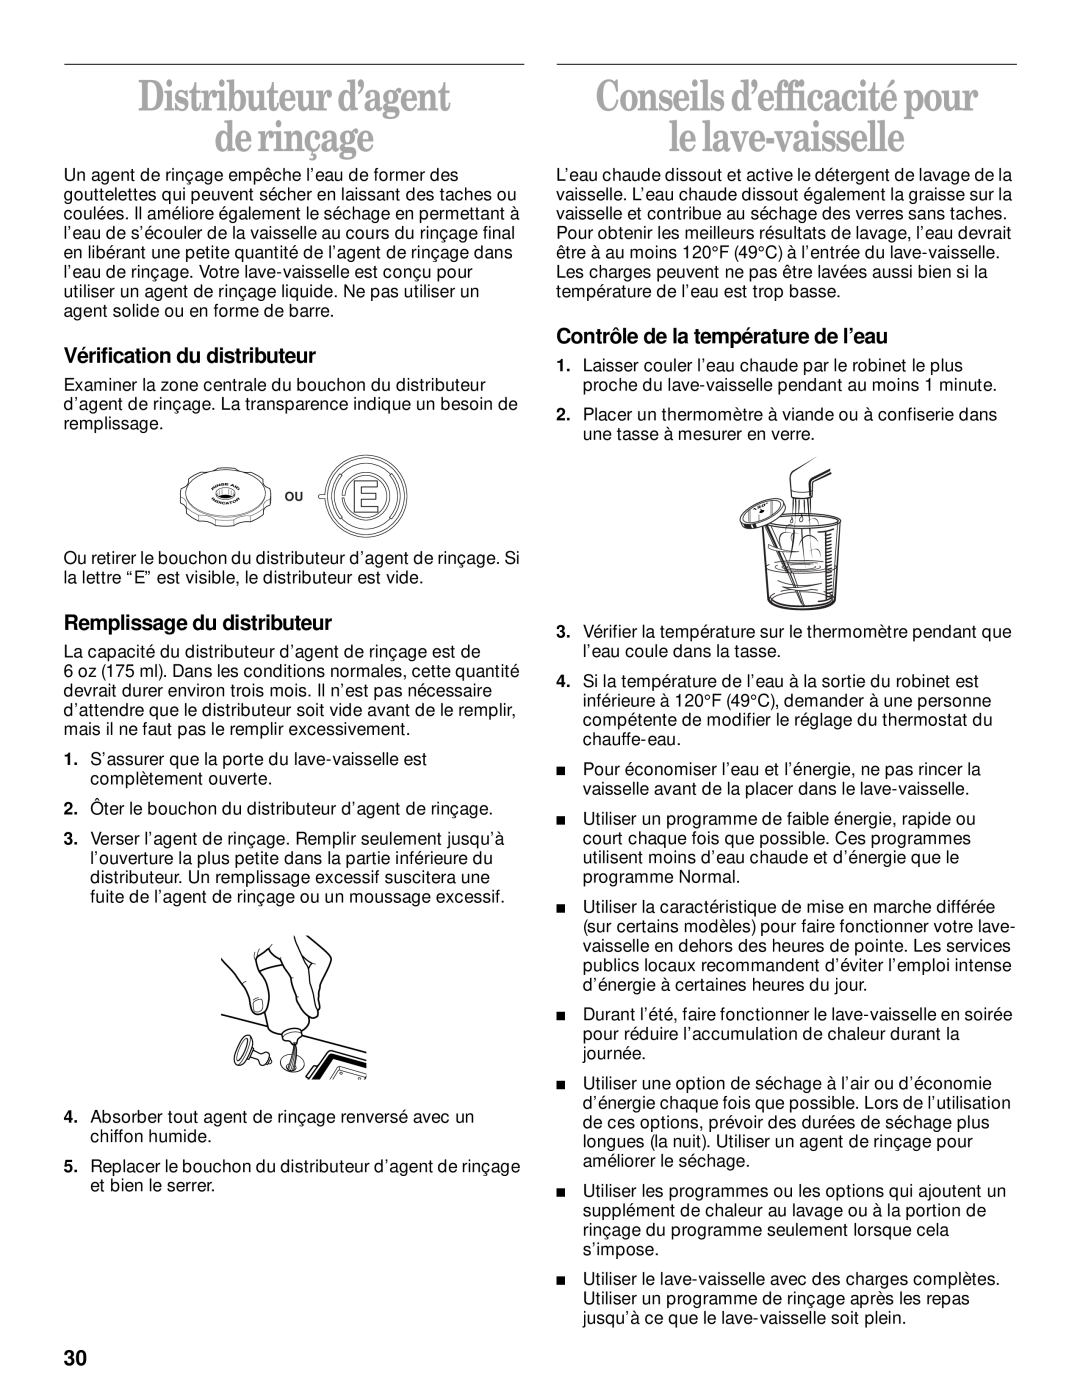 Whirlpool DU912 8051563 manual Distributeur d’agent de rinçage, Conseils d’efficacité pour le lave-vaisselle 